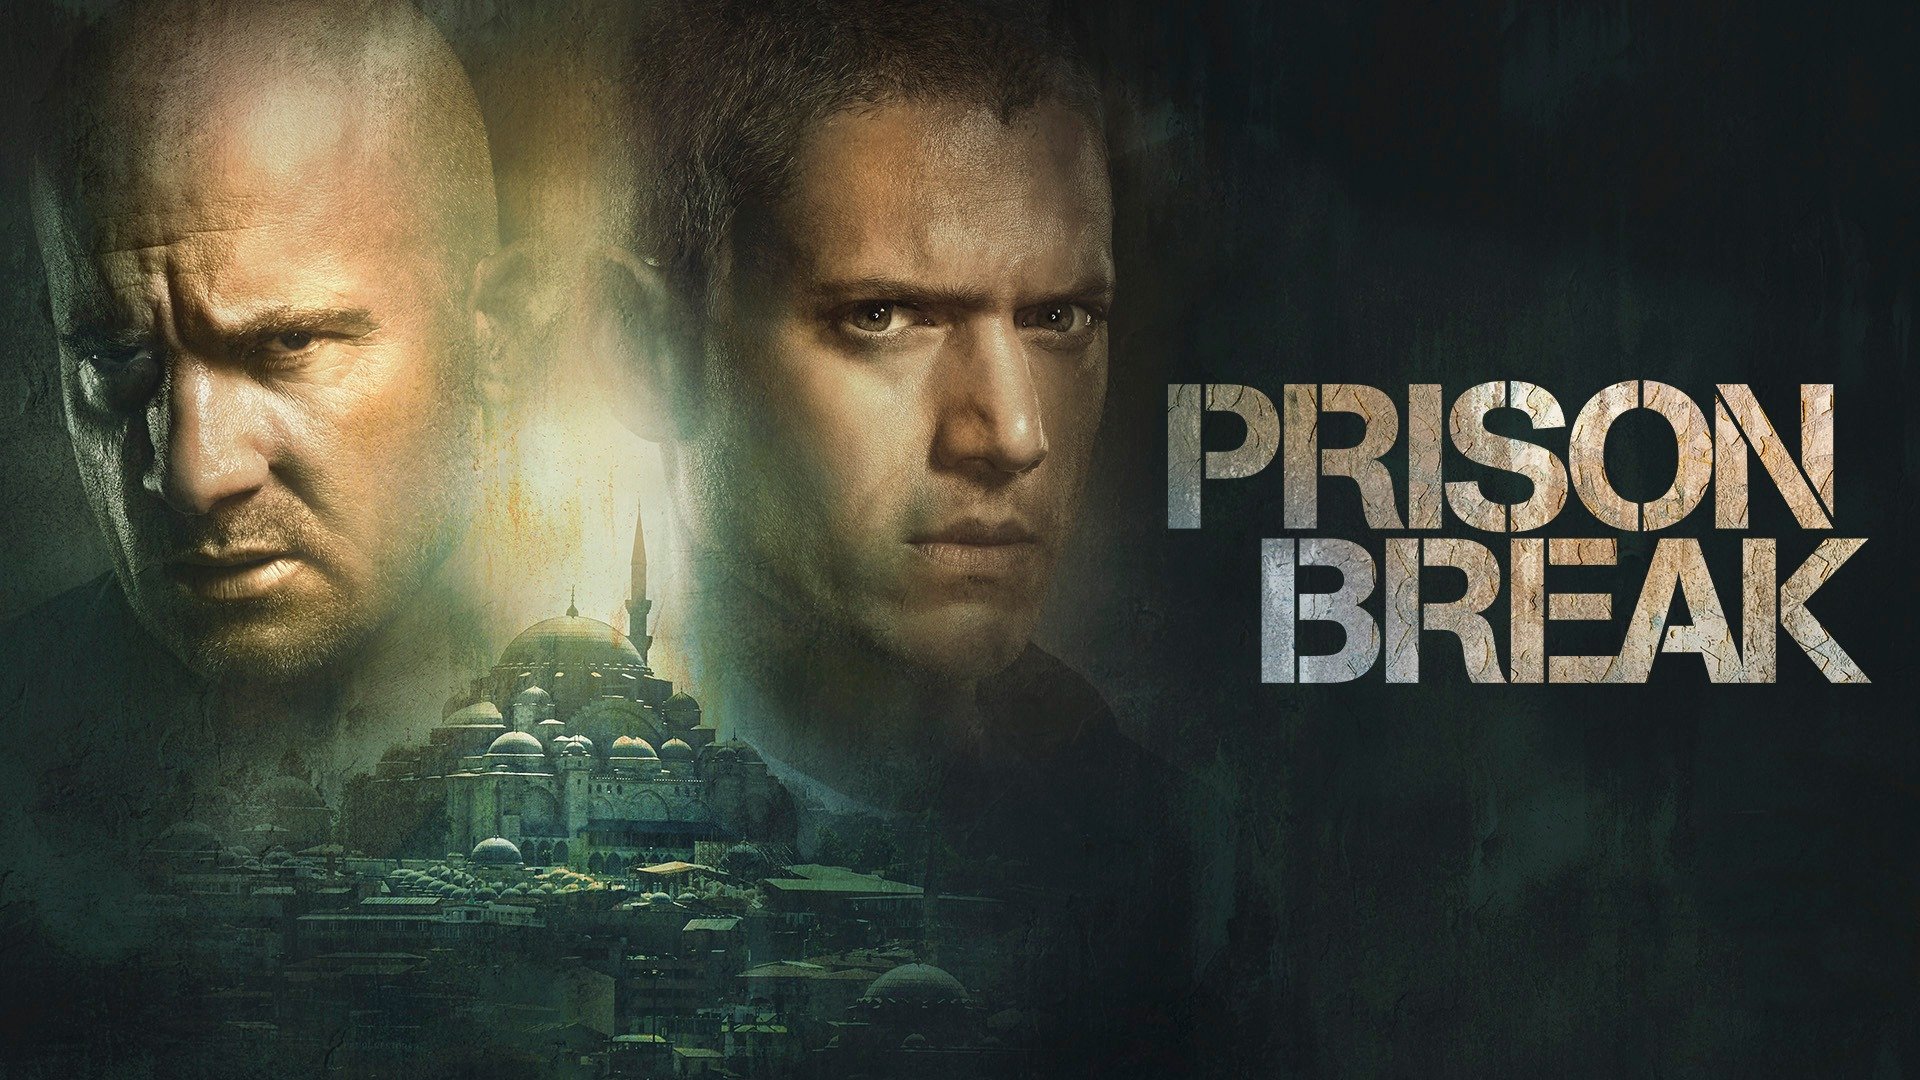 prison break season 5 episode 1 review